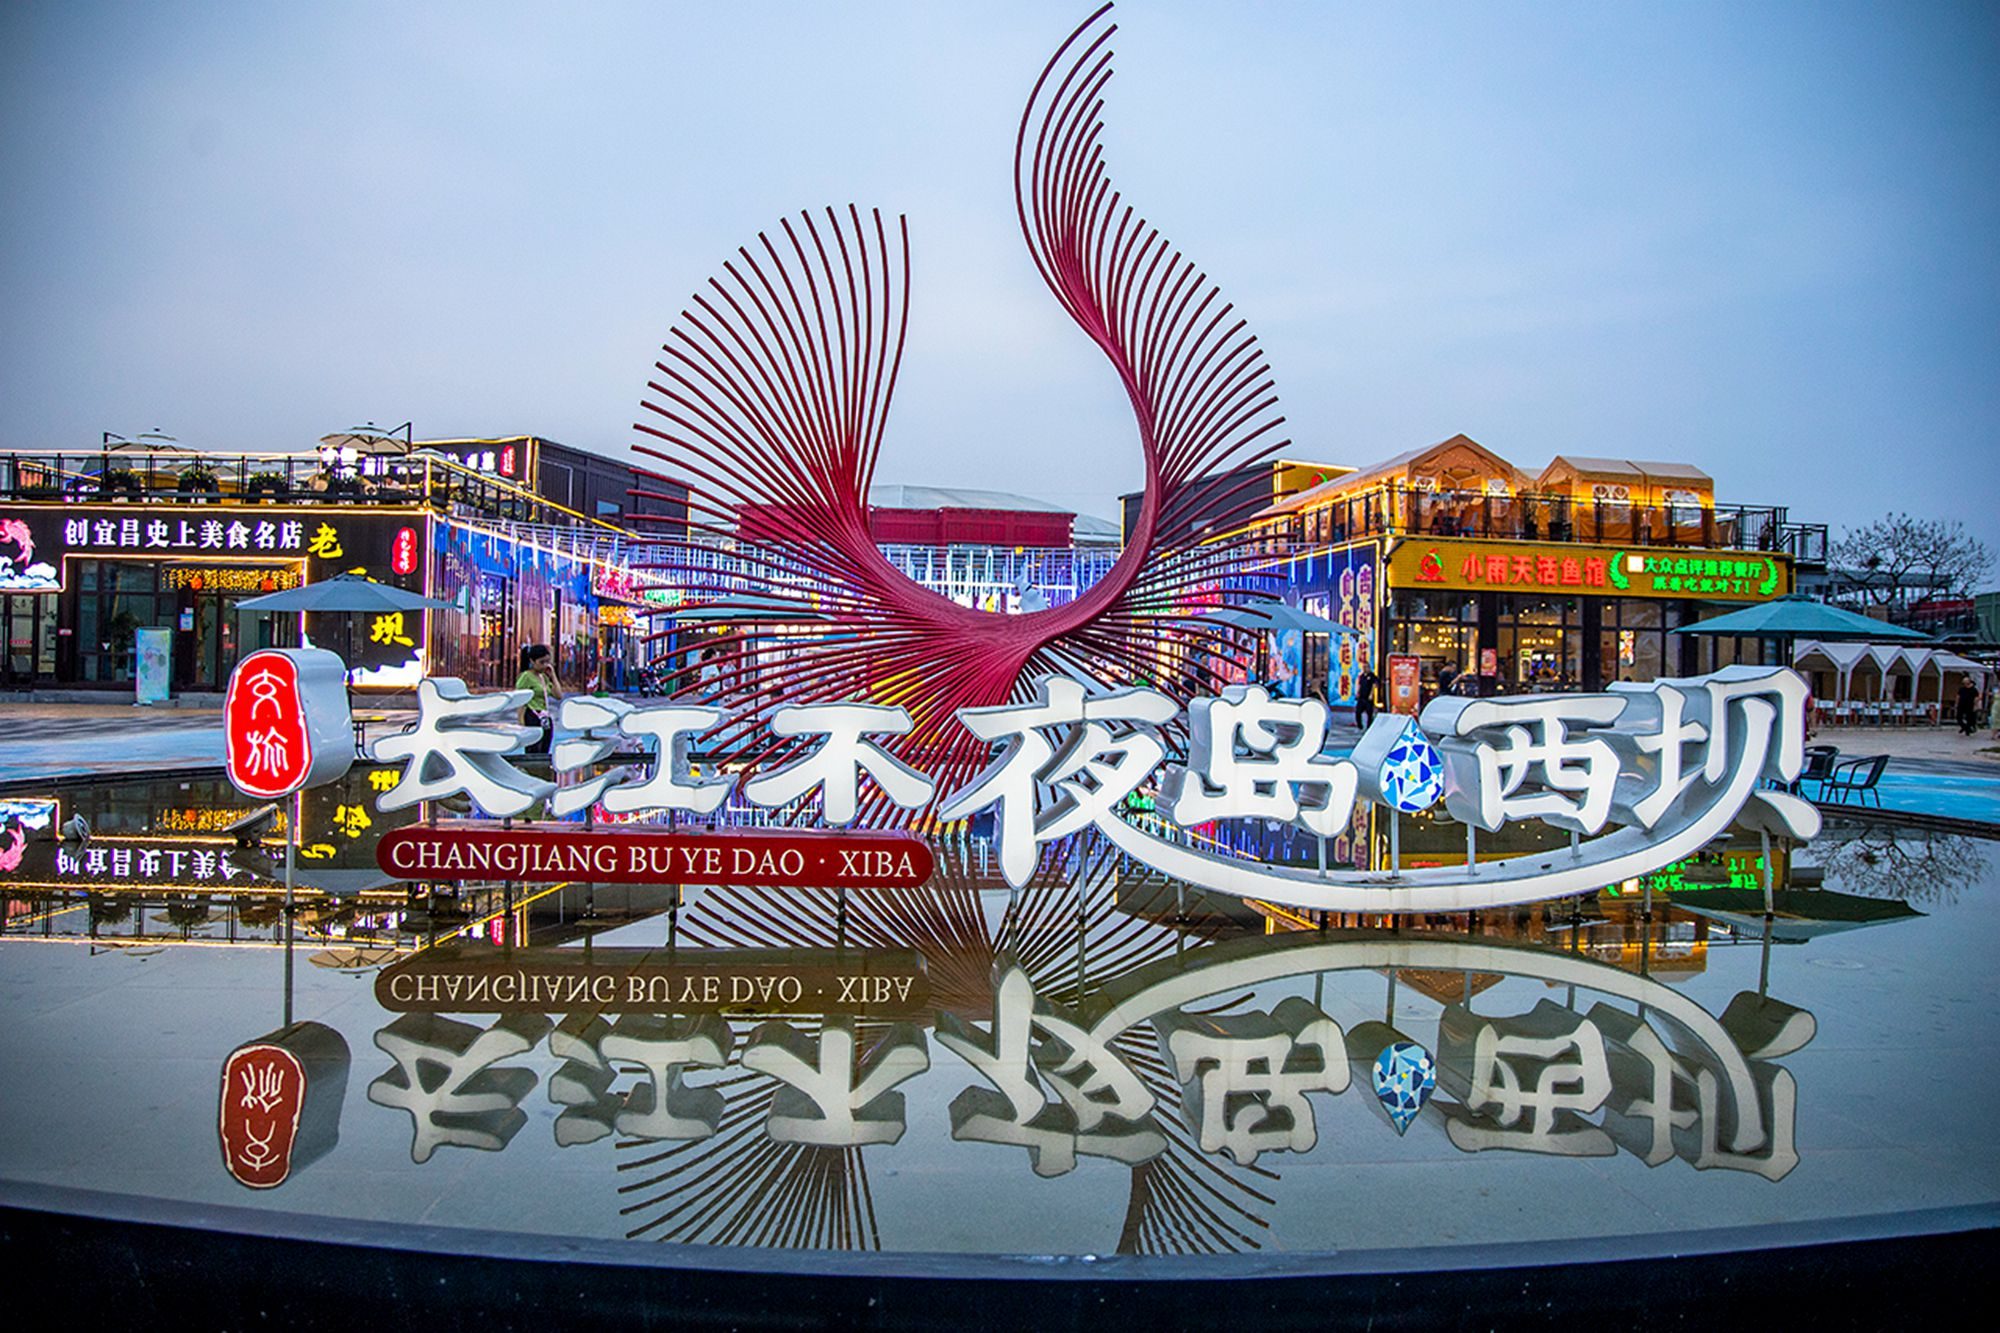 宜昌长江不夜岛,这里有美丽的夜色,成为了游客喜爱的网红打卡地